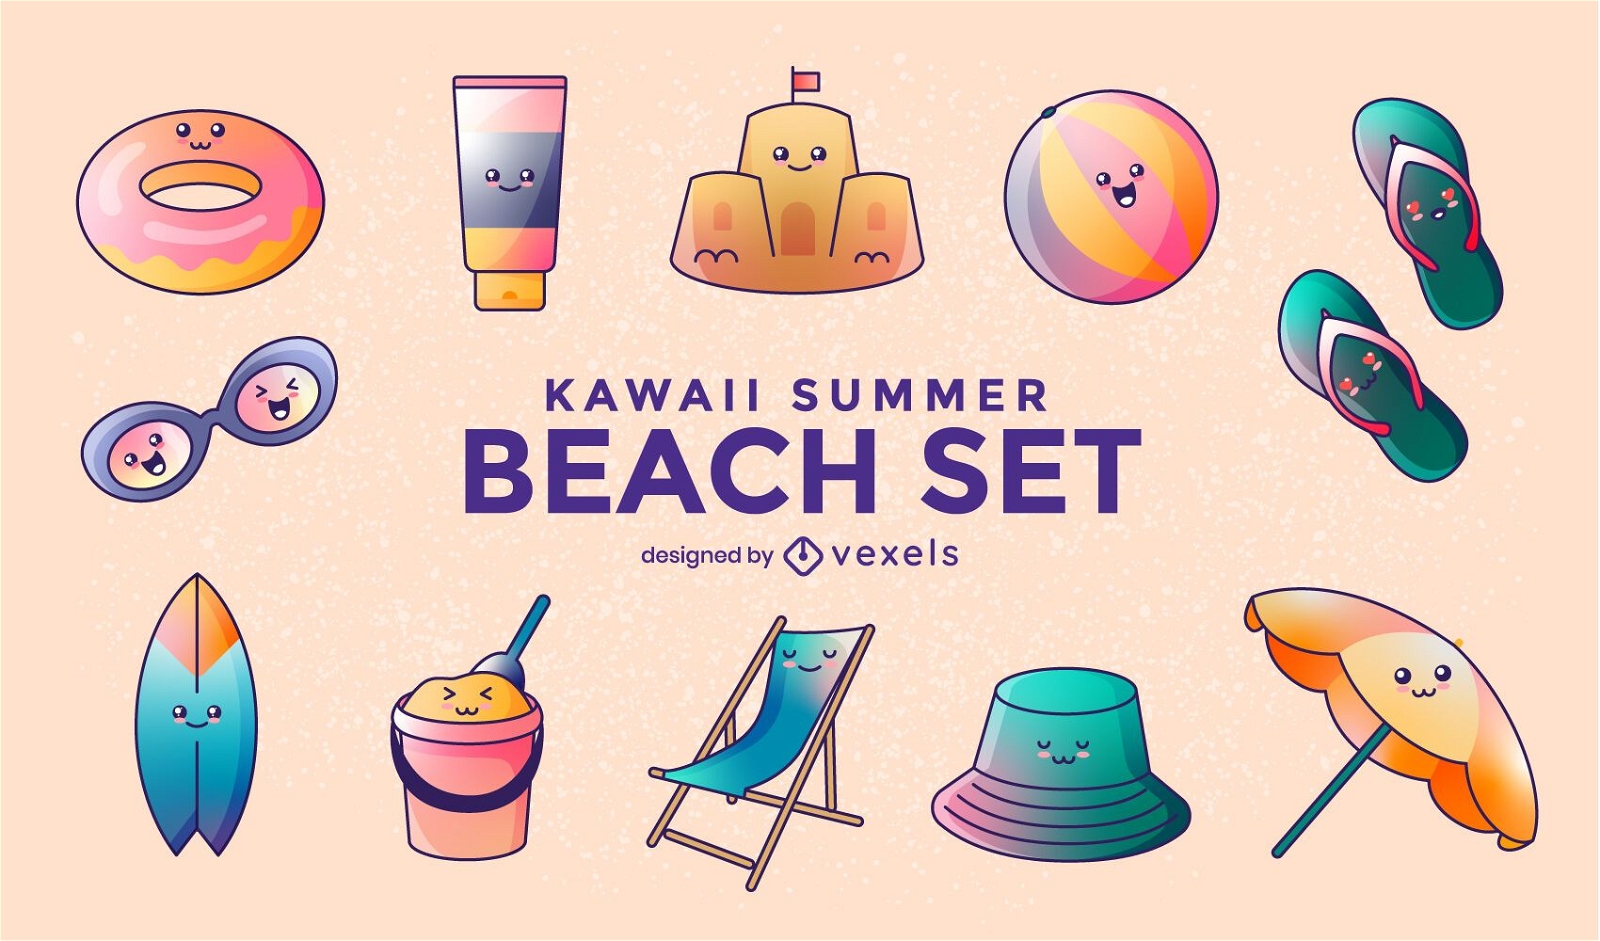 Kawaii summer beach set